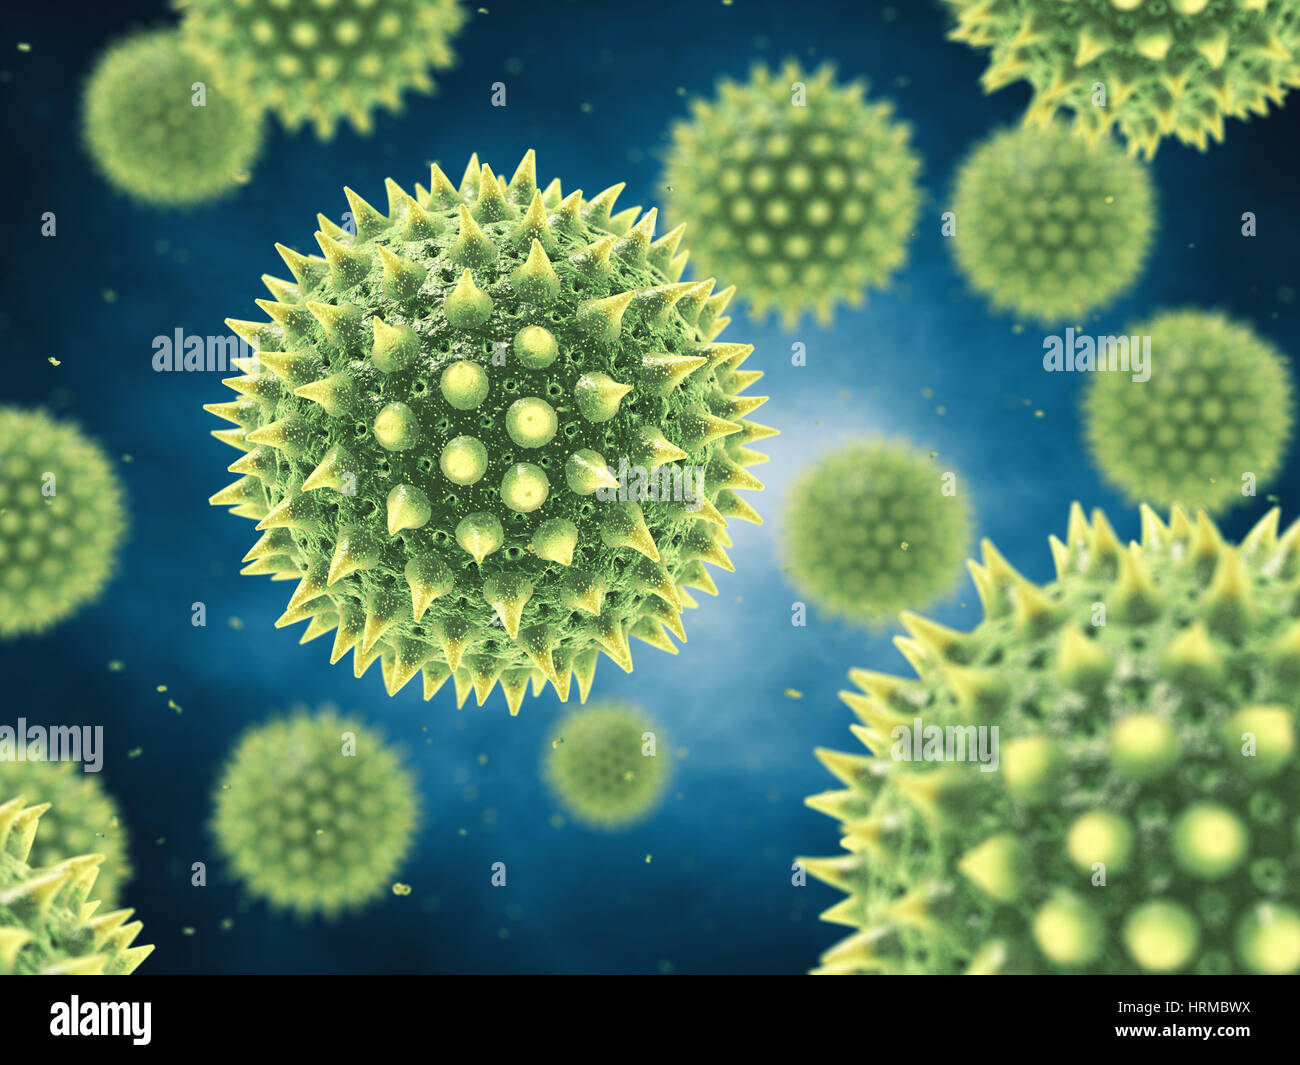 L'allergie au pollen est également connu sous le nom de rhume des foins ou rhinite allergique , grains de pollen aéroporté Banque D'Images